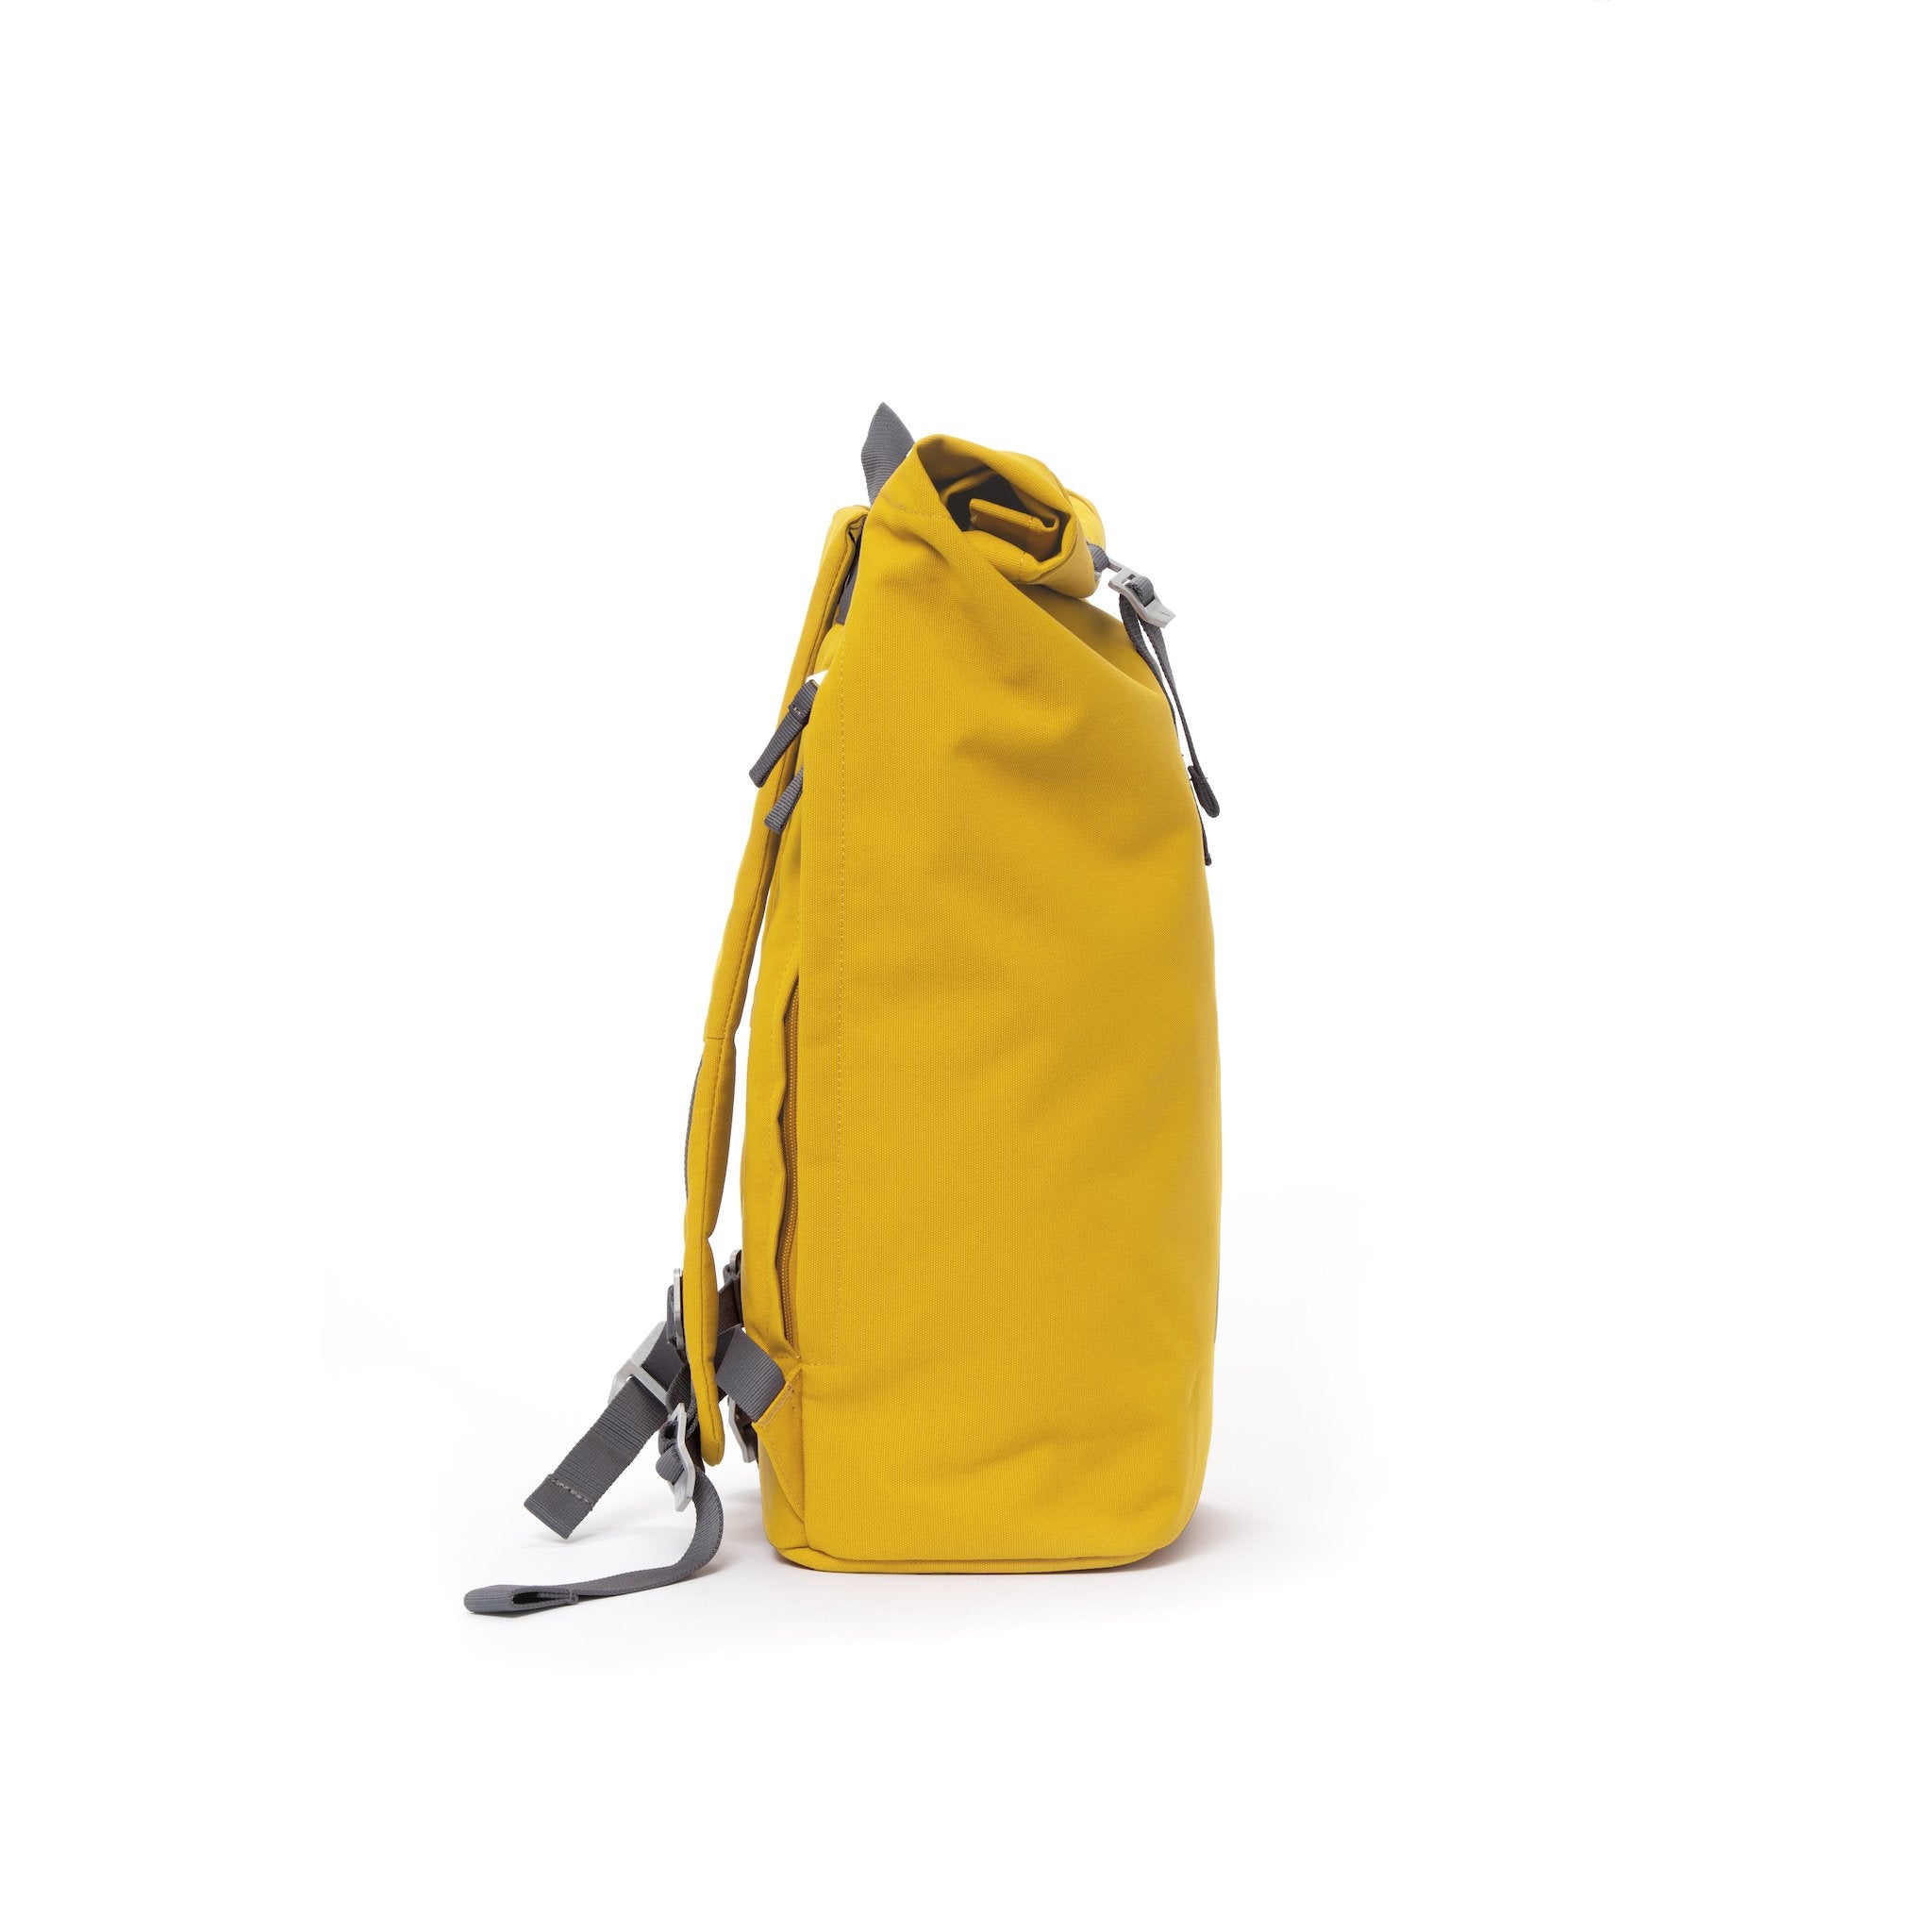 Yellow waterproof canvas men’s rolltop backpack.